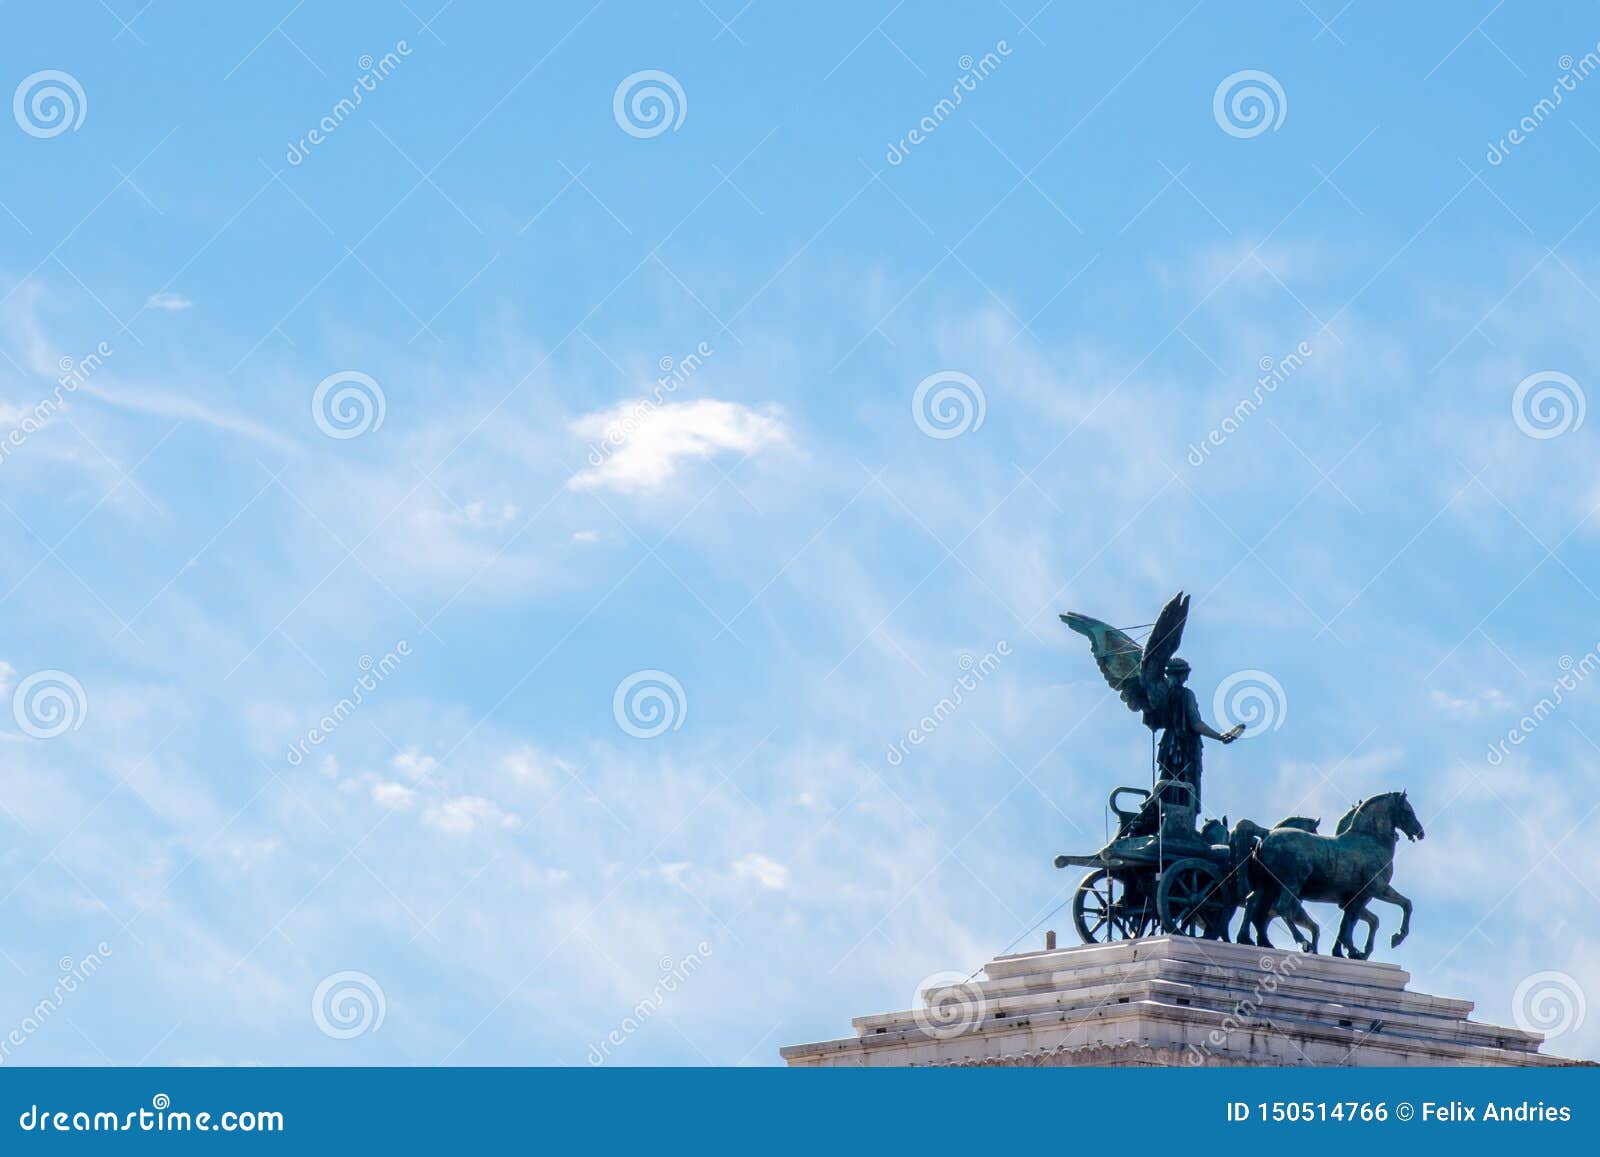 escultura parte del monumento de vittorio emanuele,  altare della patria,  piazza venezia, rome italy